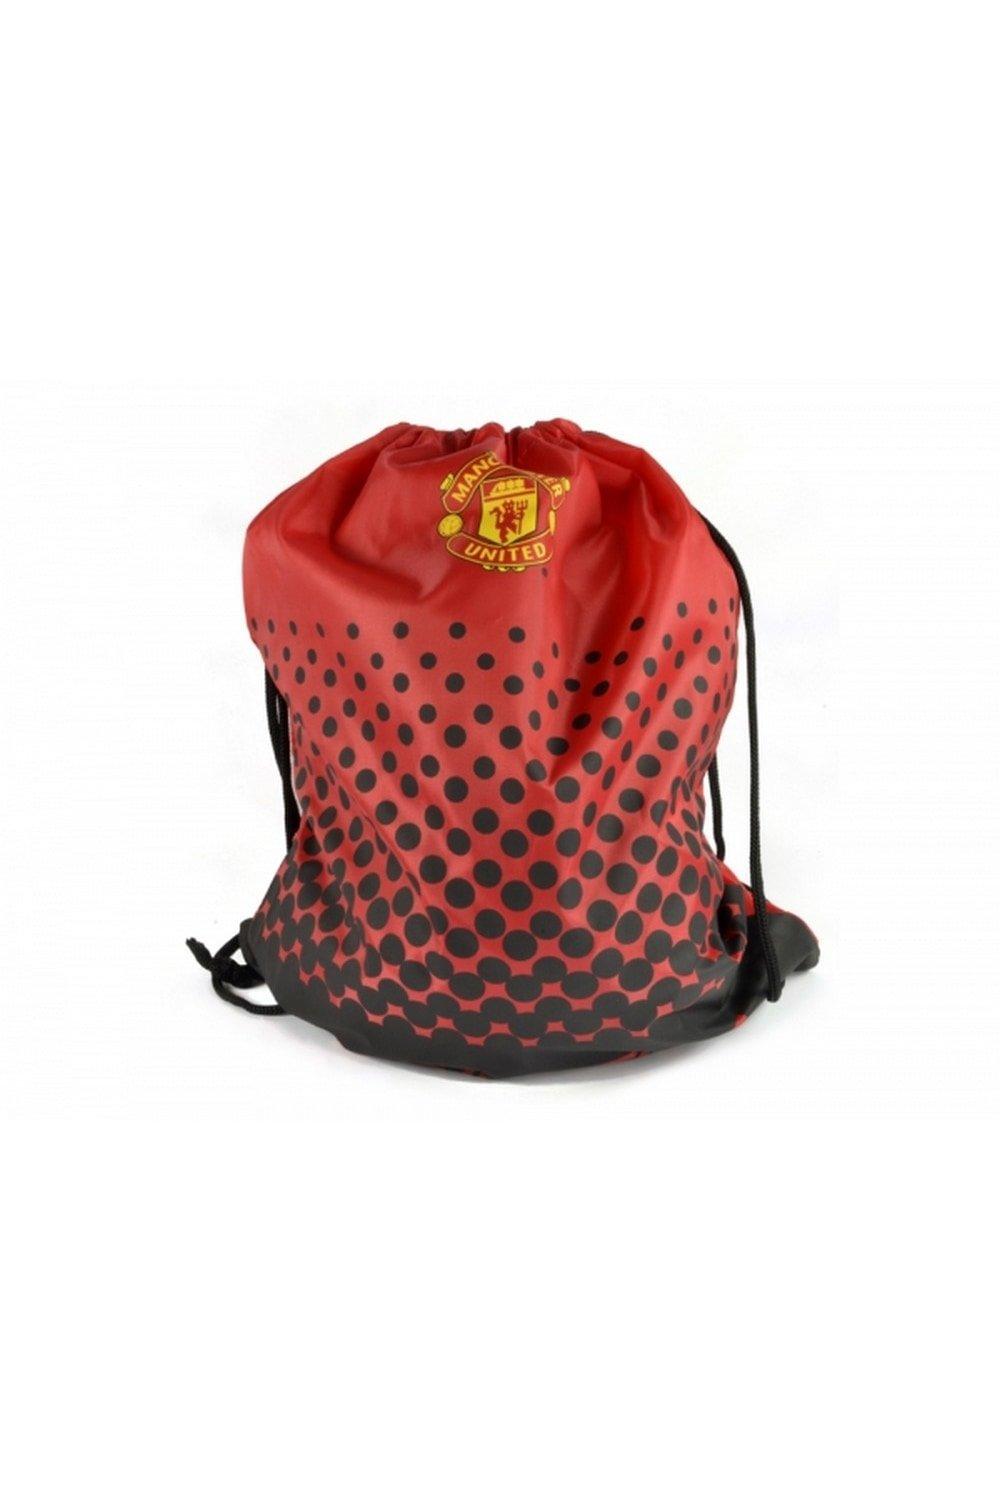 Спортивная сумка Манчестер Юнайтед Manchester United FC, красный водонепроницаемая спортивная сумка на шнурке спортивный дорожный уличный рюкзак для фитнеса для покупок для плавания баскетбола йоги